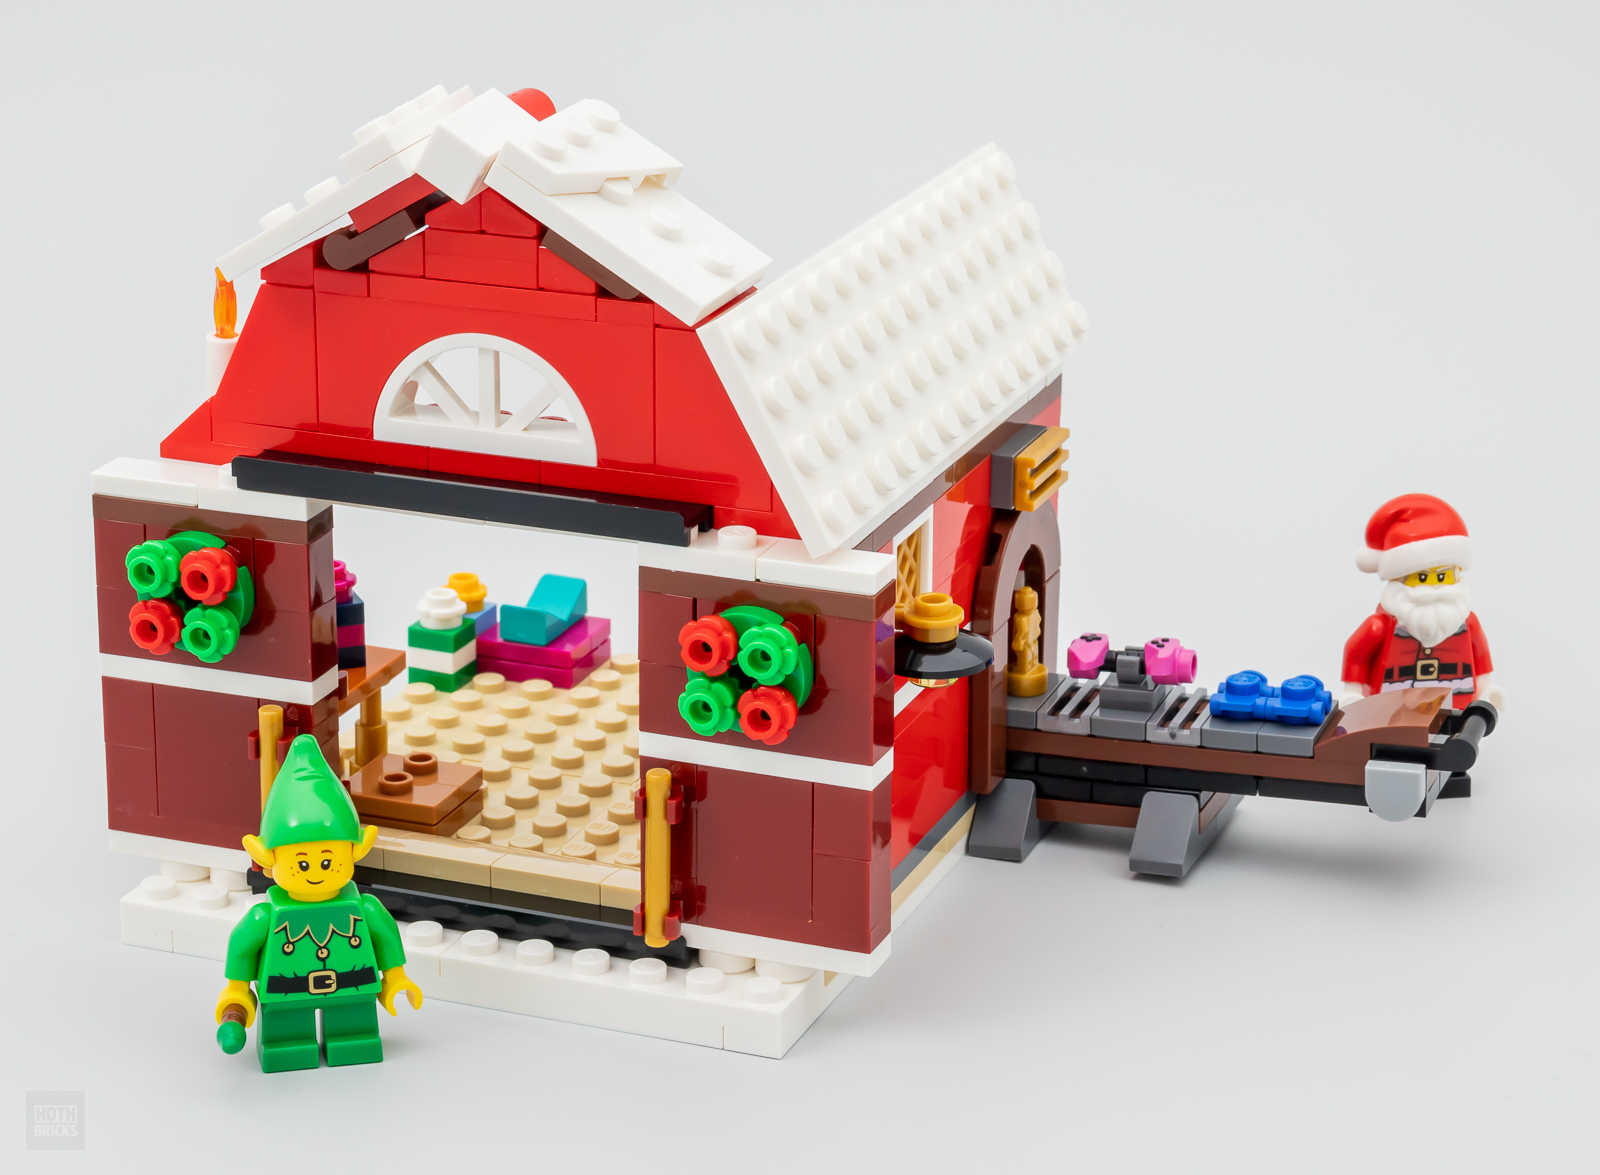 Heel snel getest: LEGO 40565 Santa's Workshop